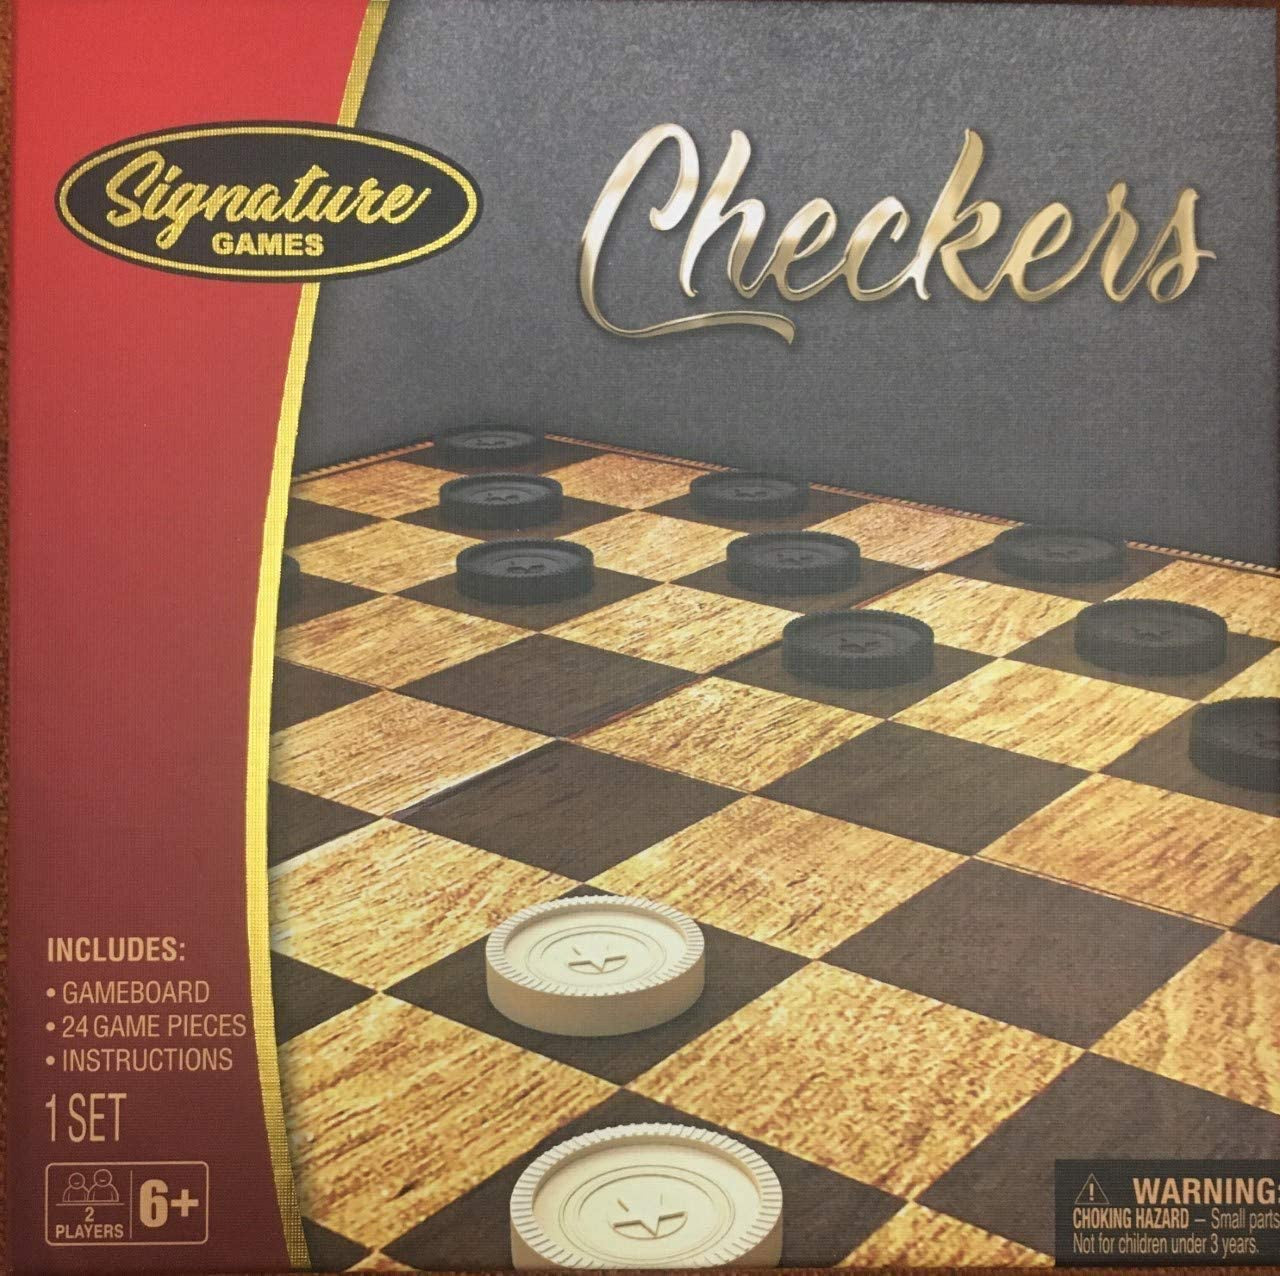 Signature Brand - Checkers